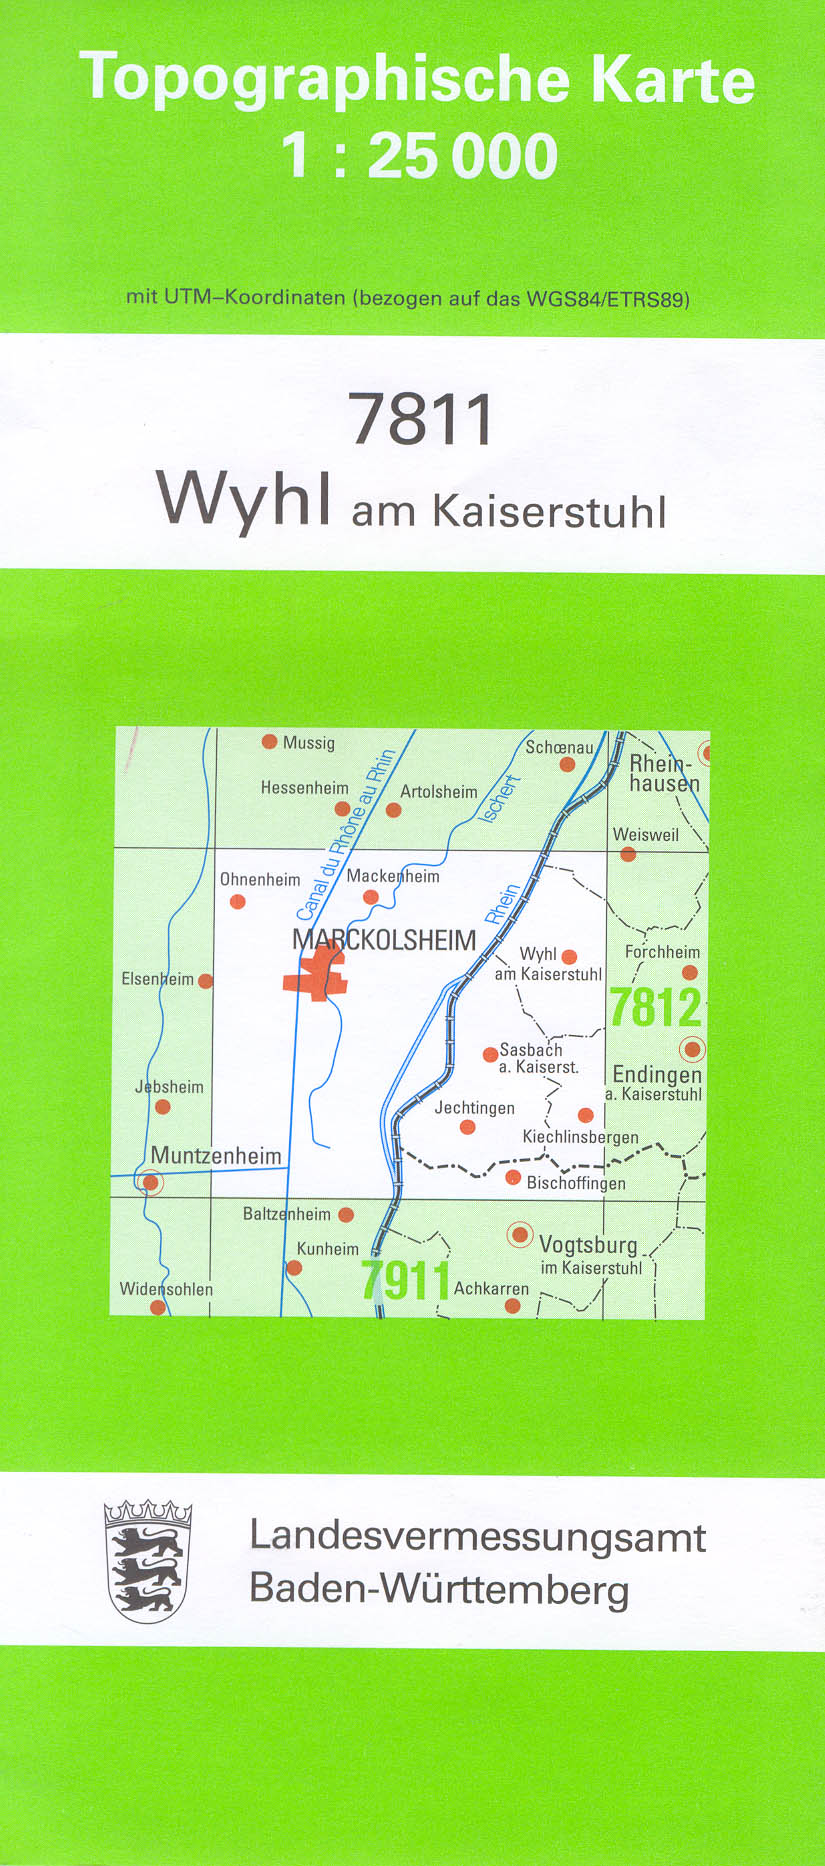 Baden-Württemberg 1:25.000 Topographische Karten Blattnummern 6222 - 7128